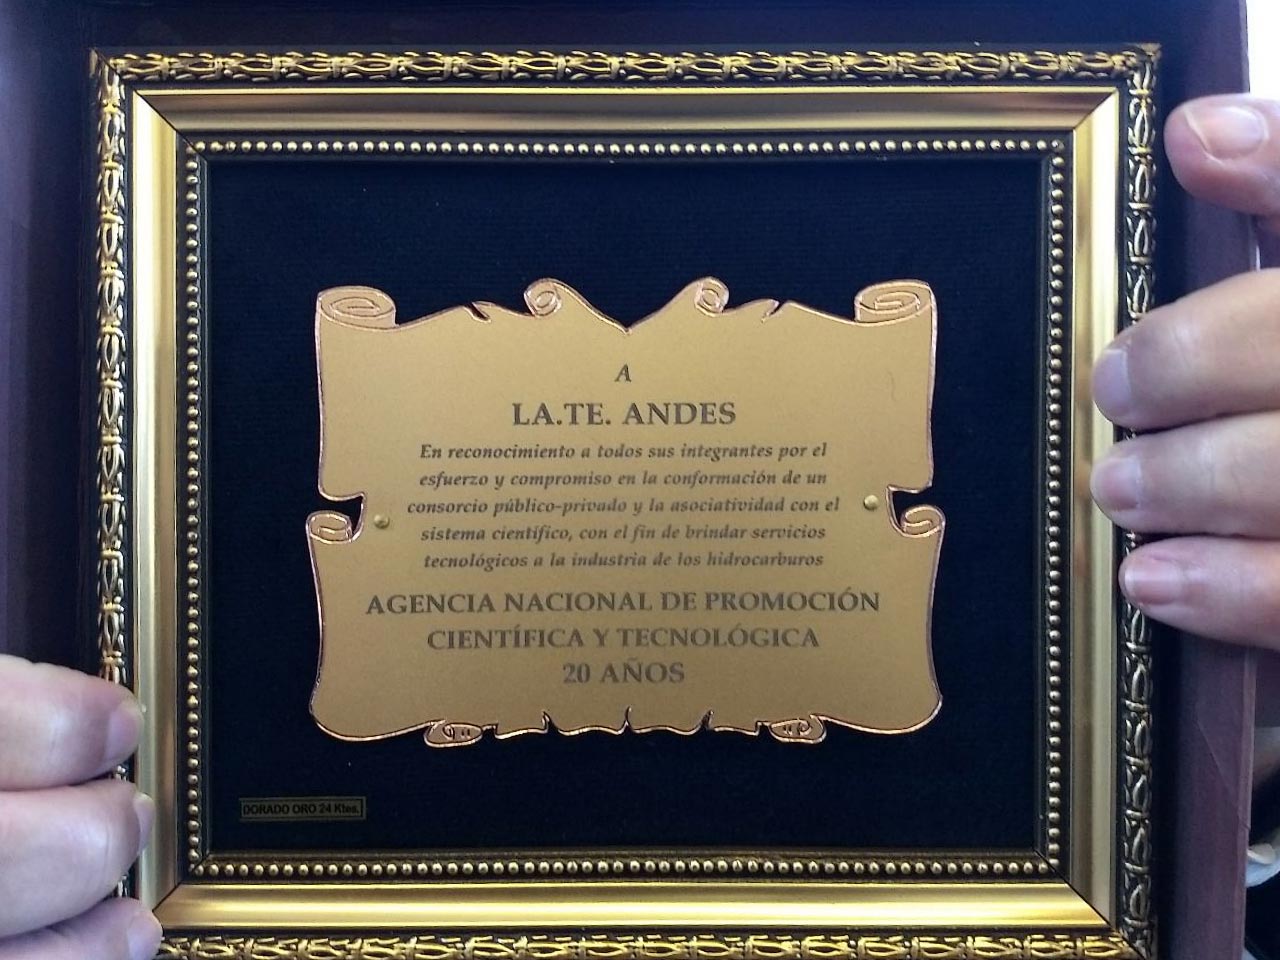 Placa de reconocimiento a la labor de LaTe Andes - ANPCyT